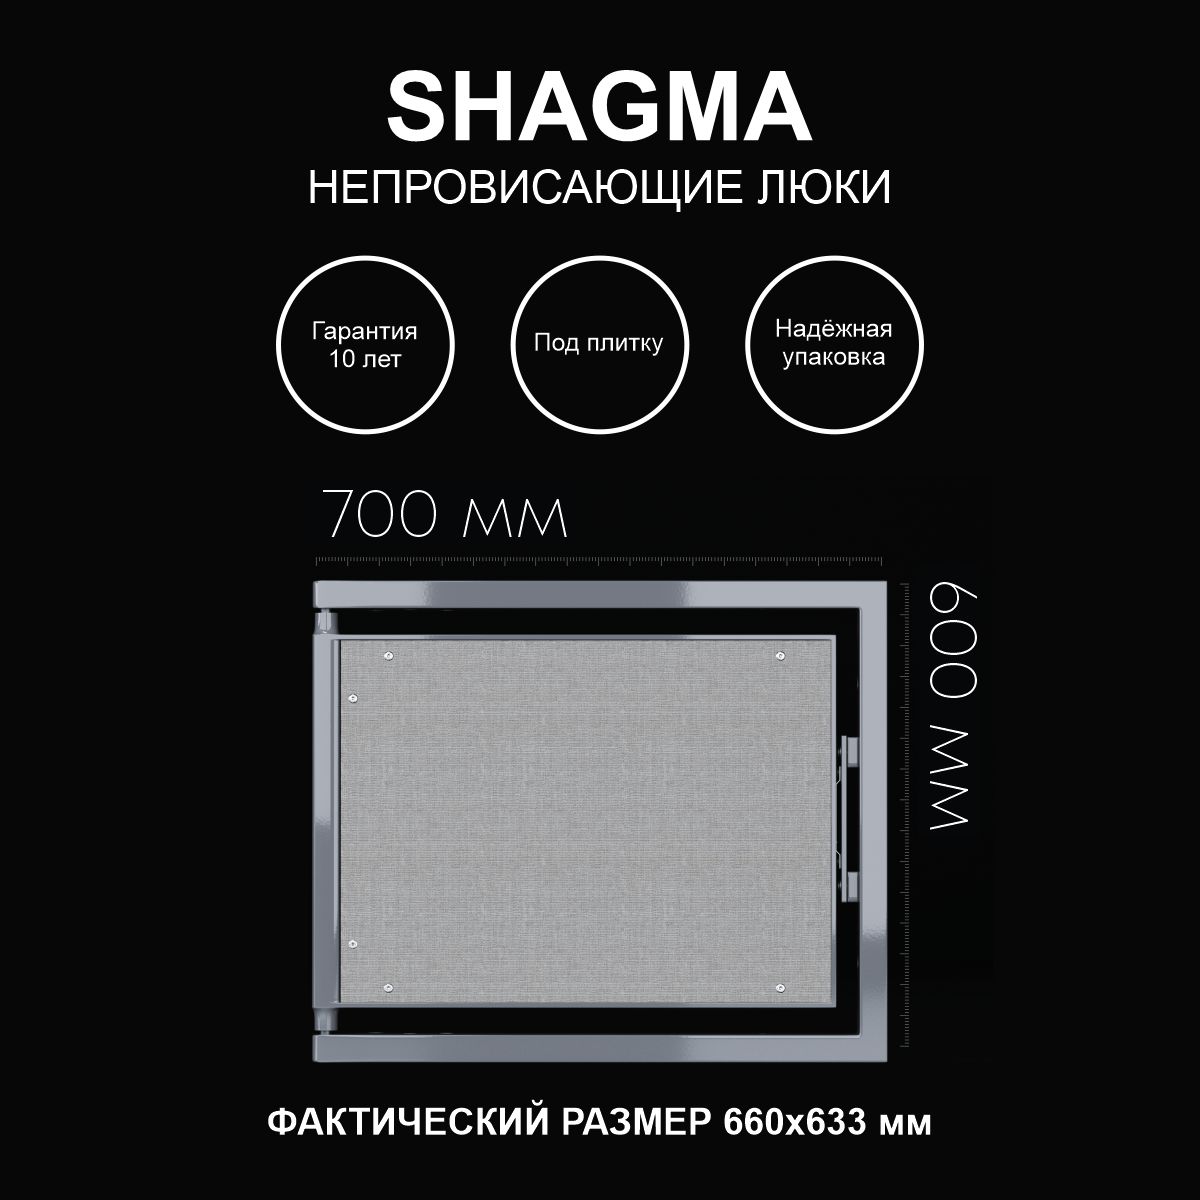 Люк SHAGMA ревизионный под плитку сантехнический 700х600 мм